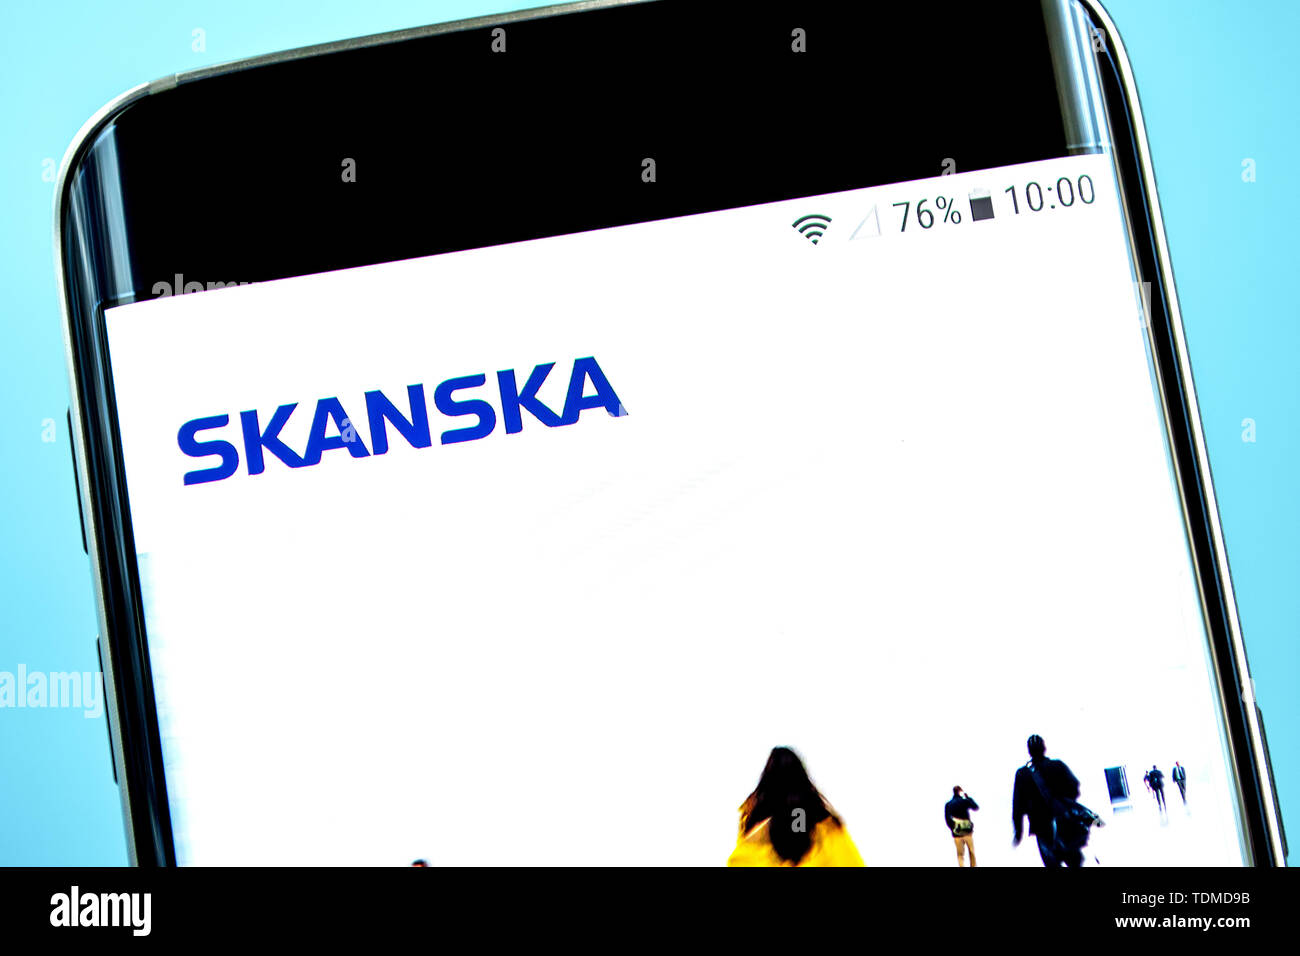 Berdiansk, Ukraine - 14 juin 2019 : Skanska accueil du site. Logo Skanska visible sur l'écran du téléphone, rédaction d'illustration. Banque D'Images